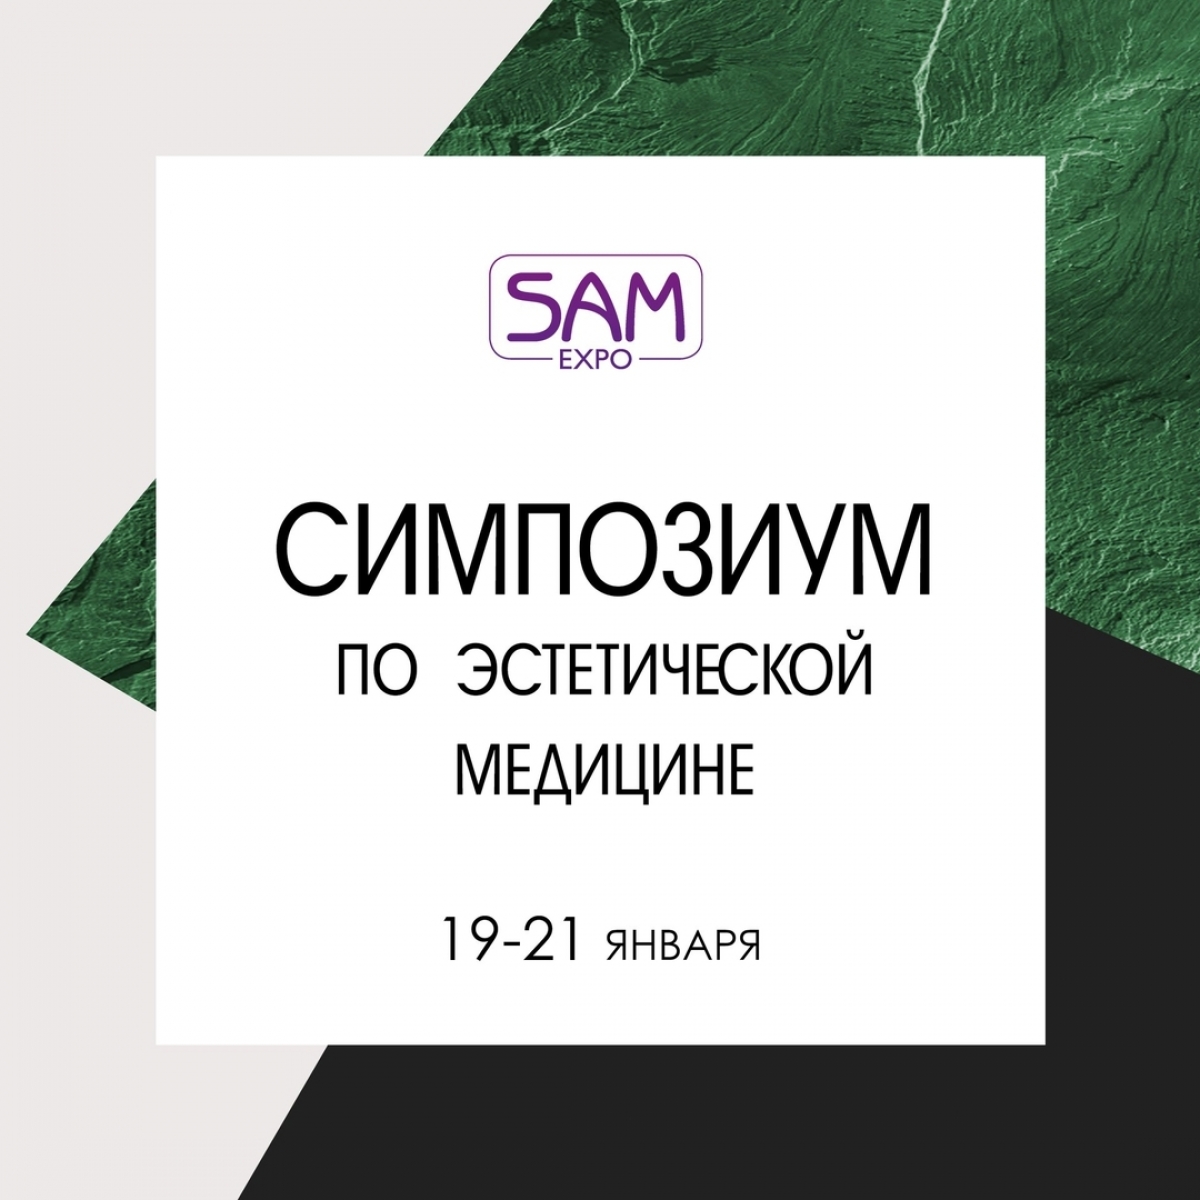 Симпозиум по эстетической медицине SAM-expo 19-21 января